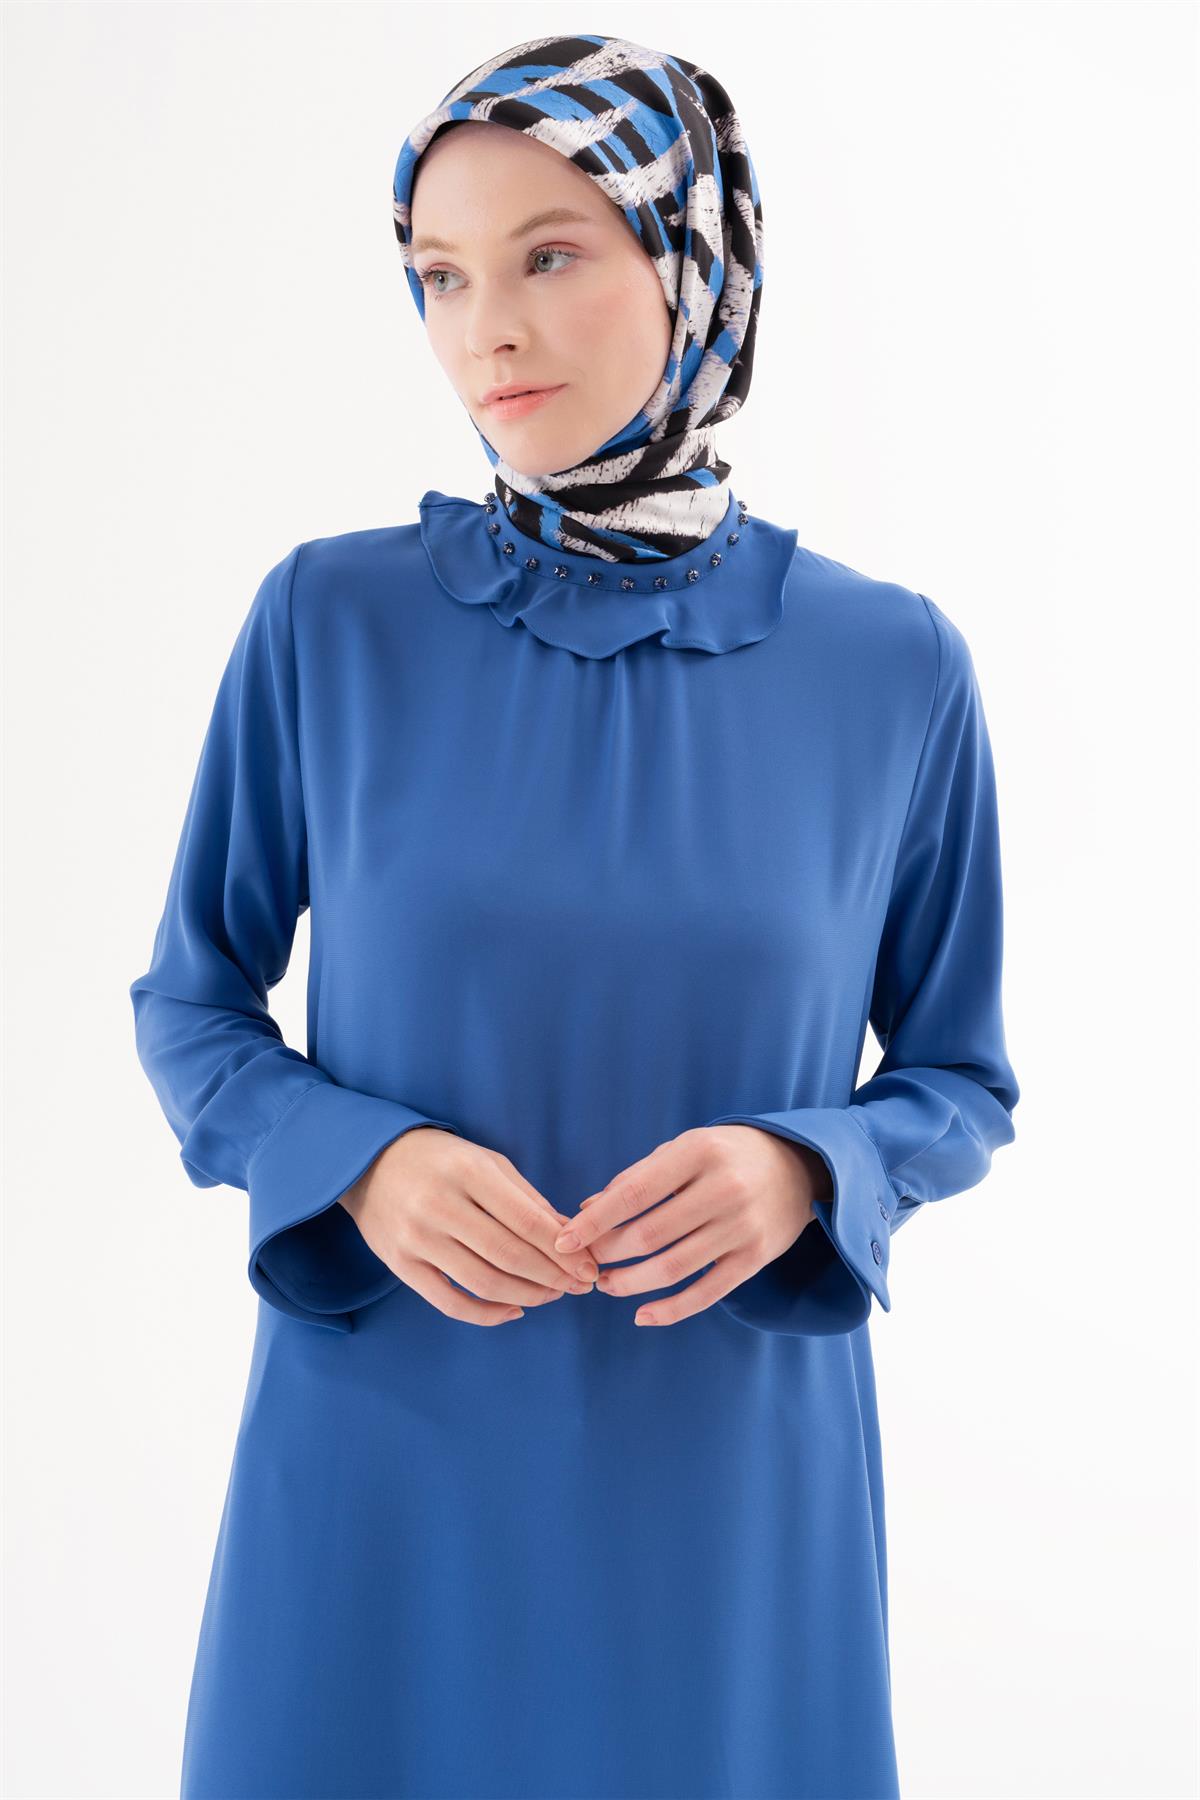 Tuğba Kadın Tunik Modelleri & Fiyatları | Tuğba Online